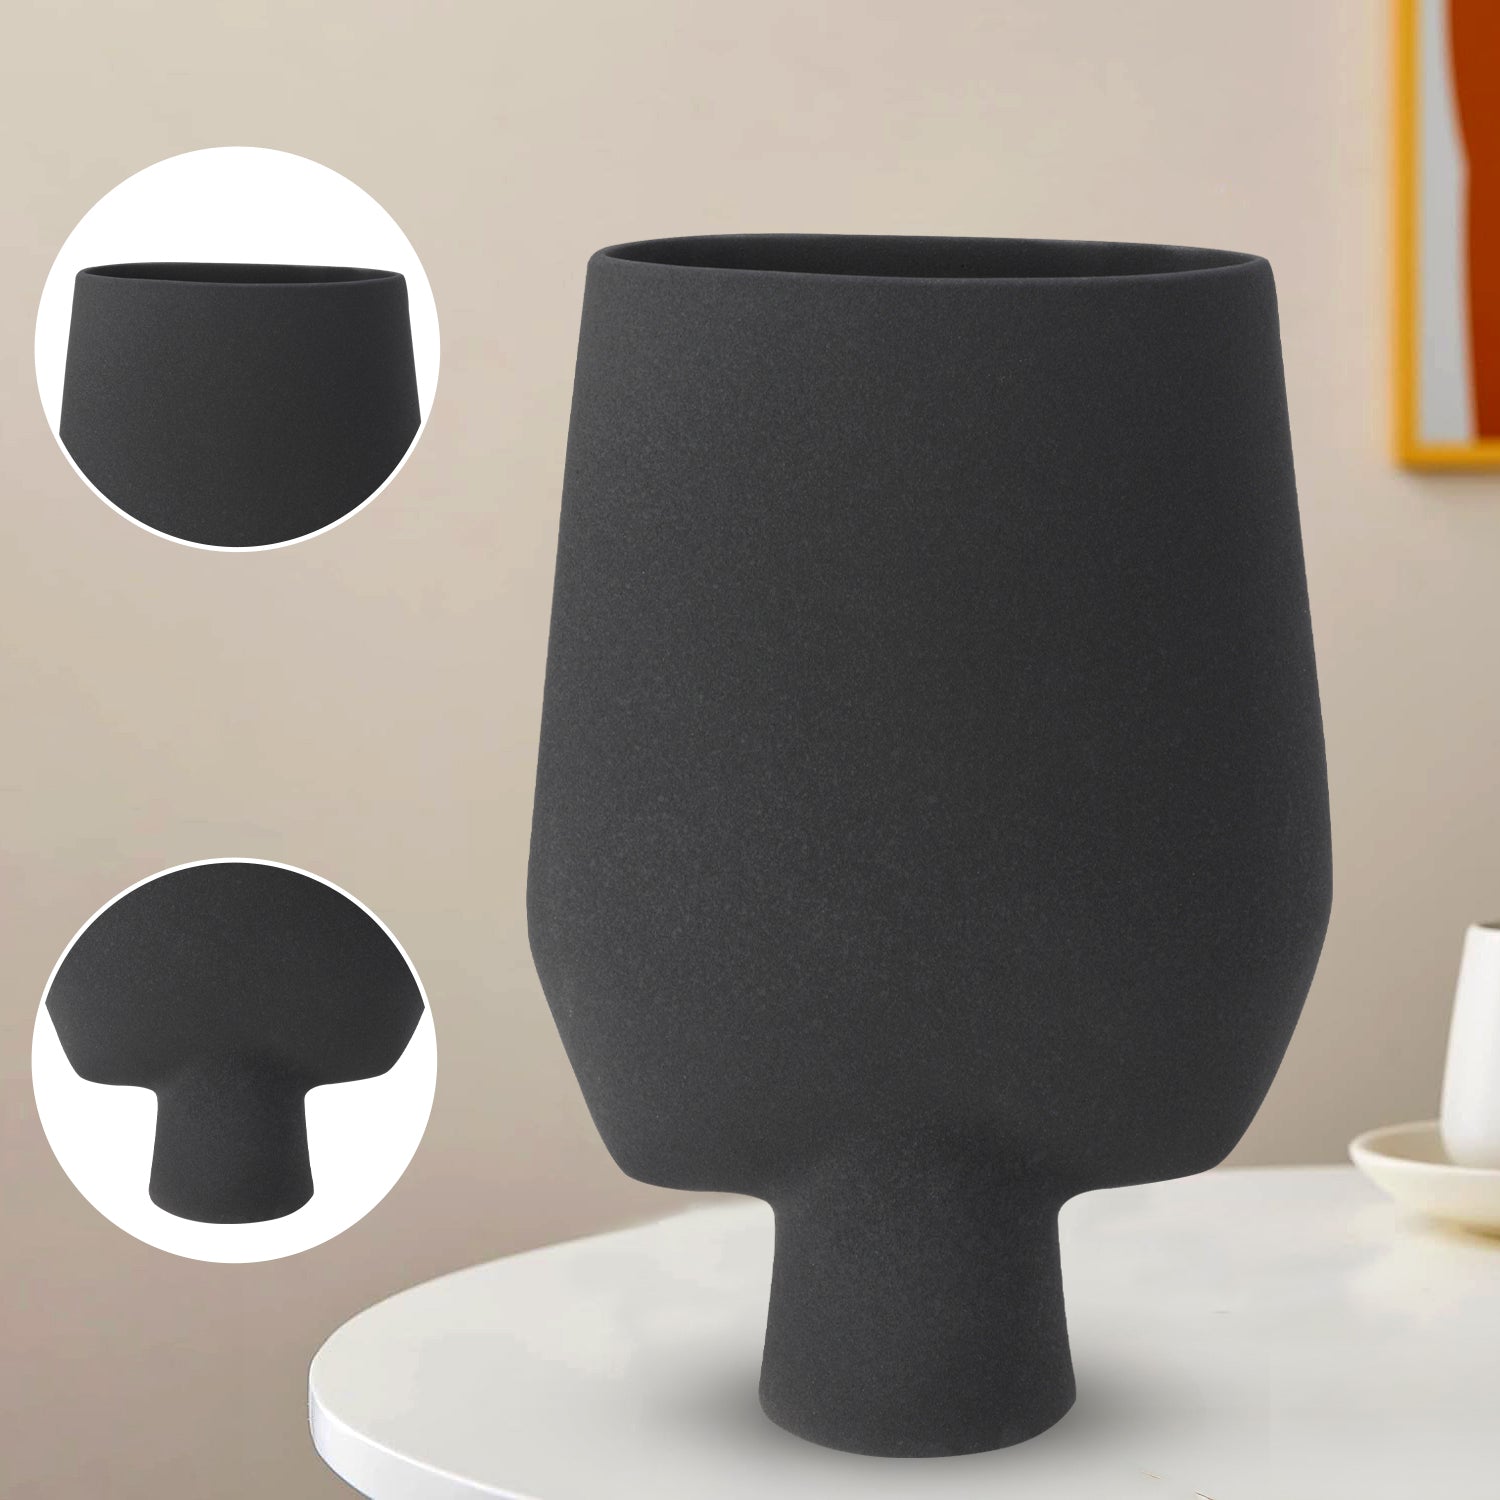 Decorative Flower Vase for Living Room - Charcoal Black